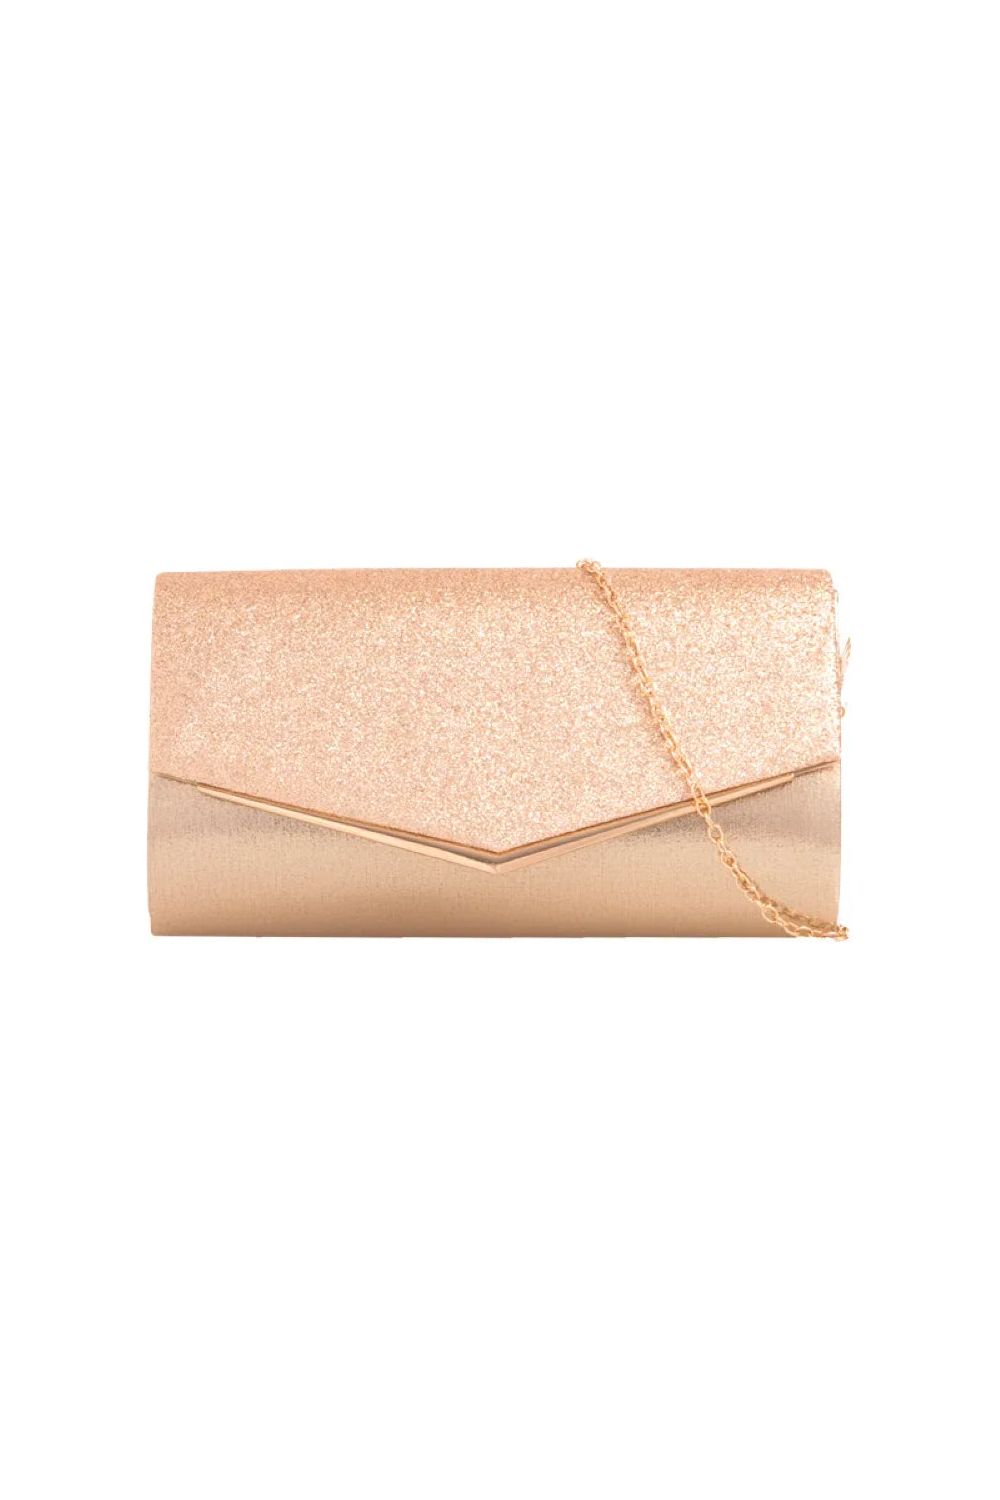 Gold Glitter Envelope Clutch Bag ALH2348